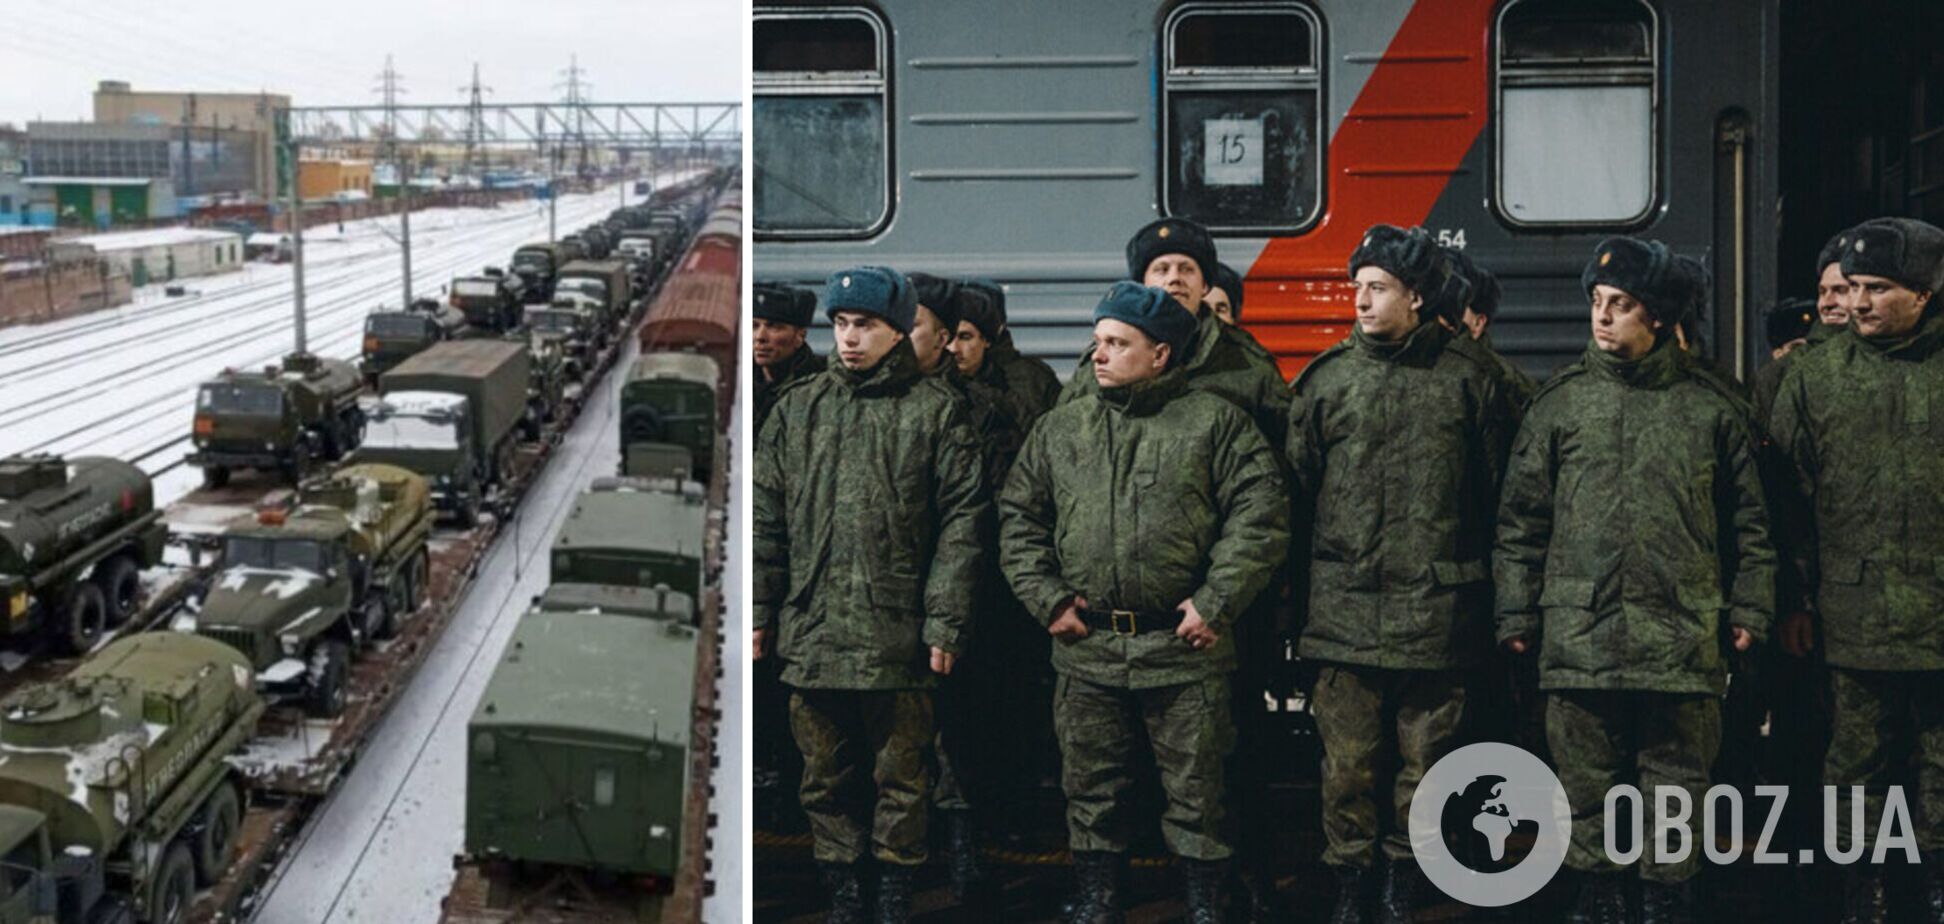 В Беларусь перебросили 15 вагонов с личным составом армии РФ: в них может быть около 800 российских военных